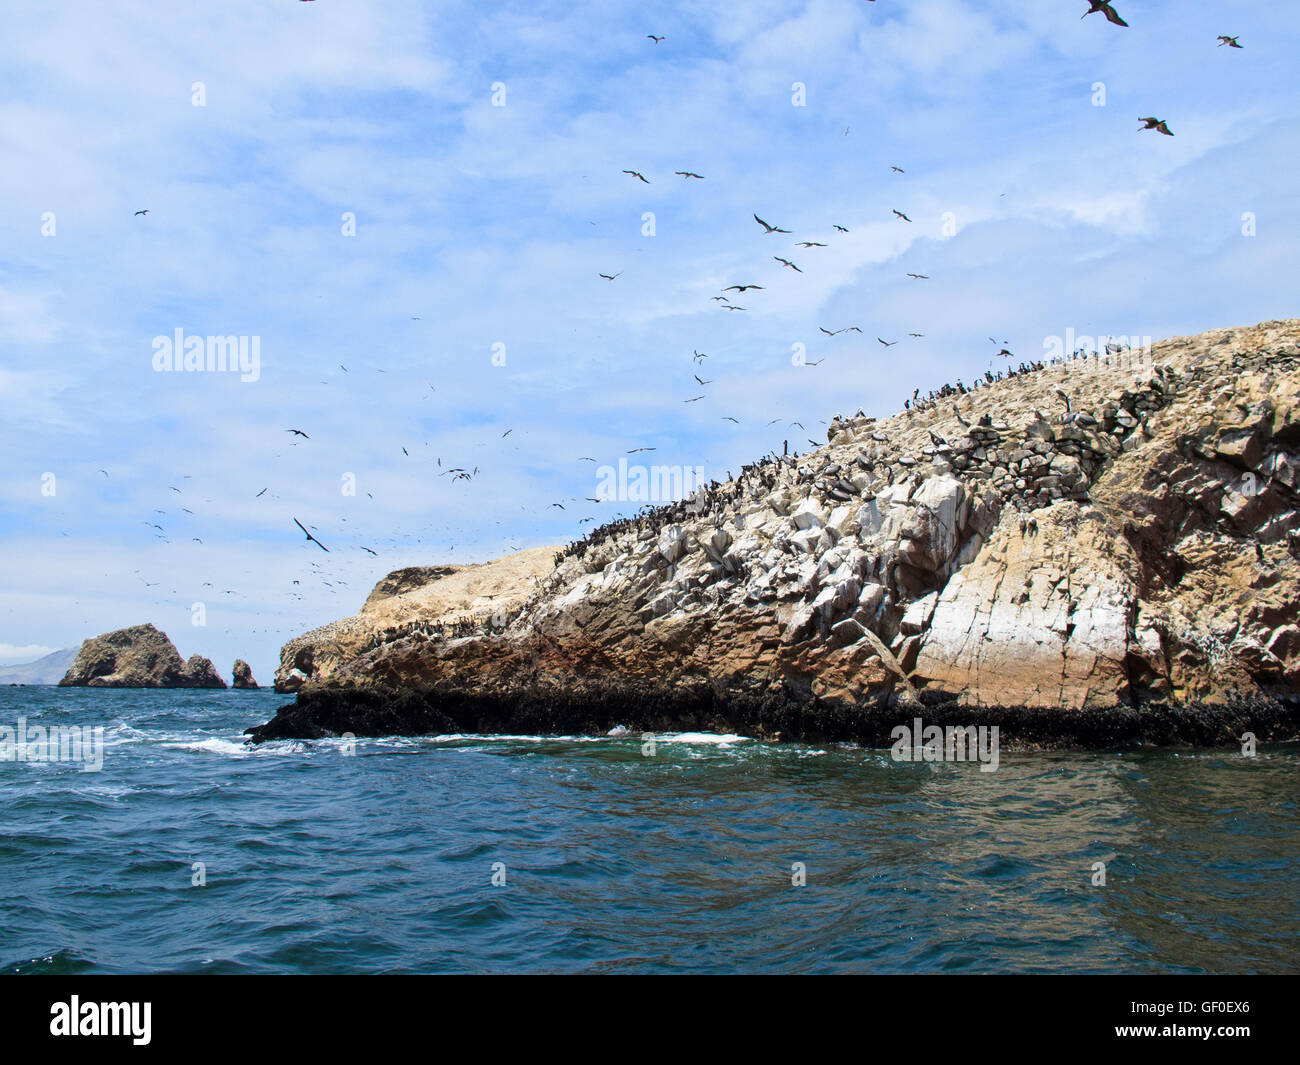 Islas Ballestas, the wildlife sanctuary. Stock Photo